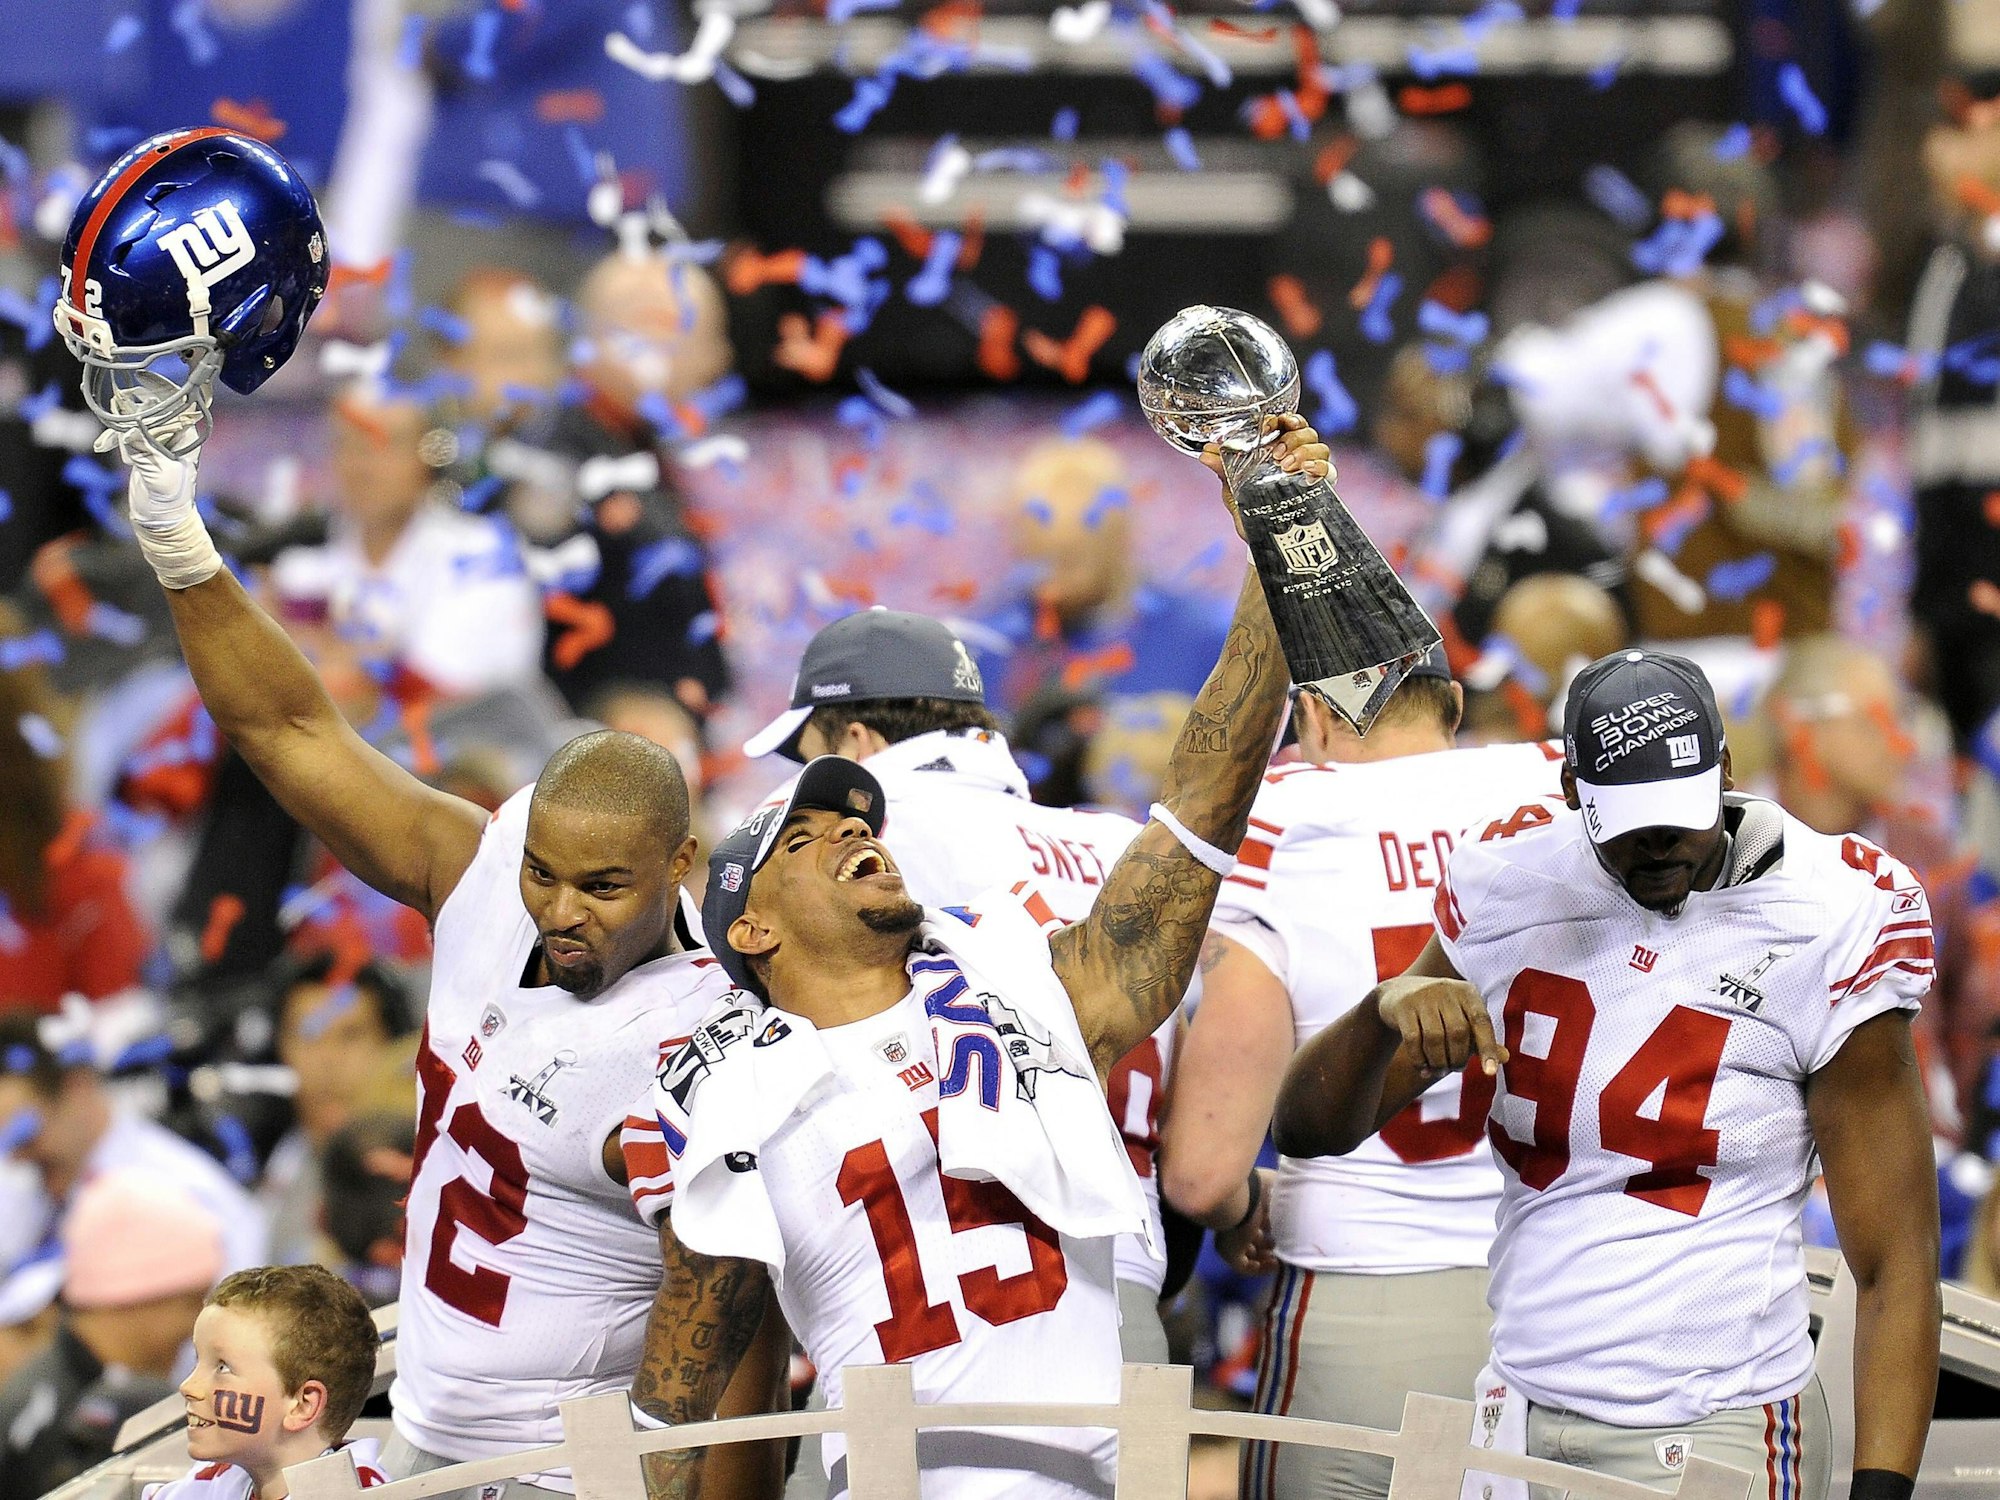 Ein Spieler der New York Giants hält die Vince Lombardi Trophy in die Höhe, während seine Mitspieler feiern.